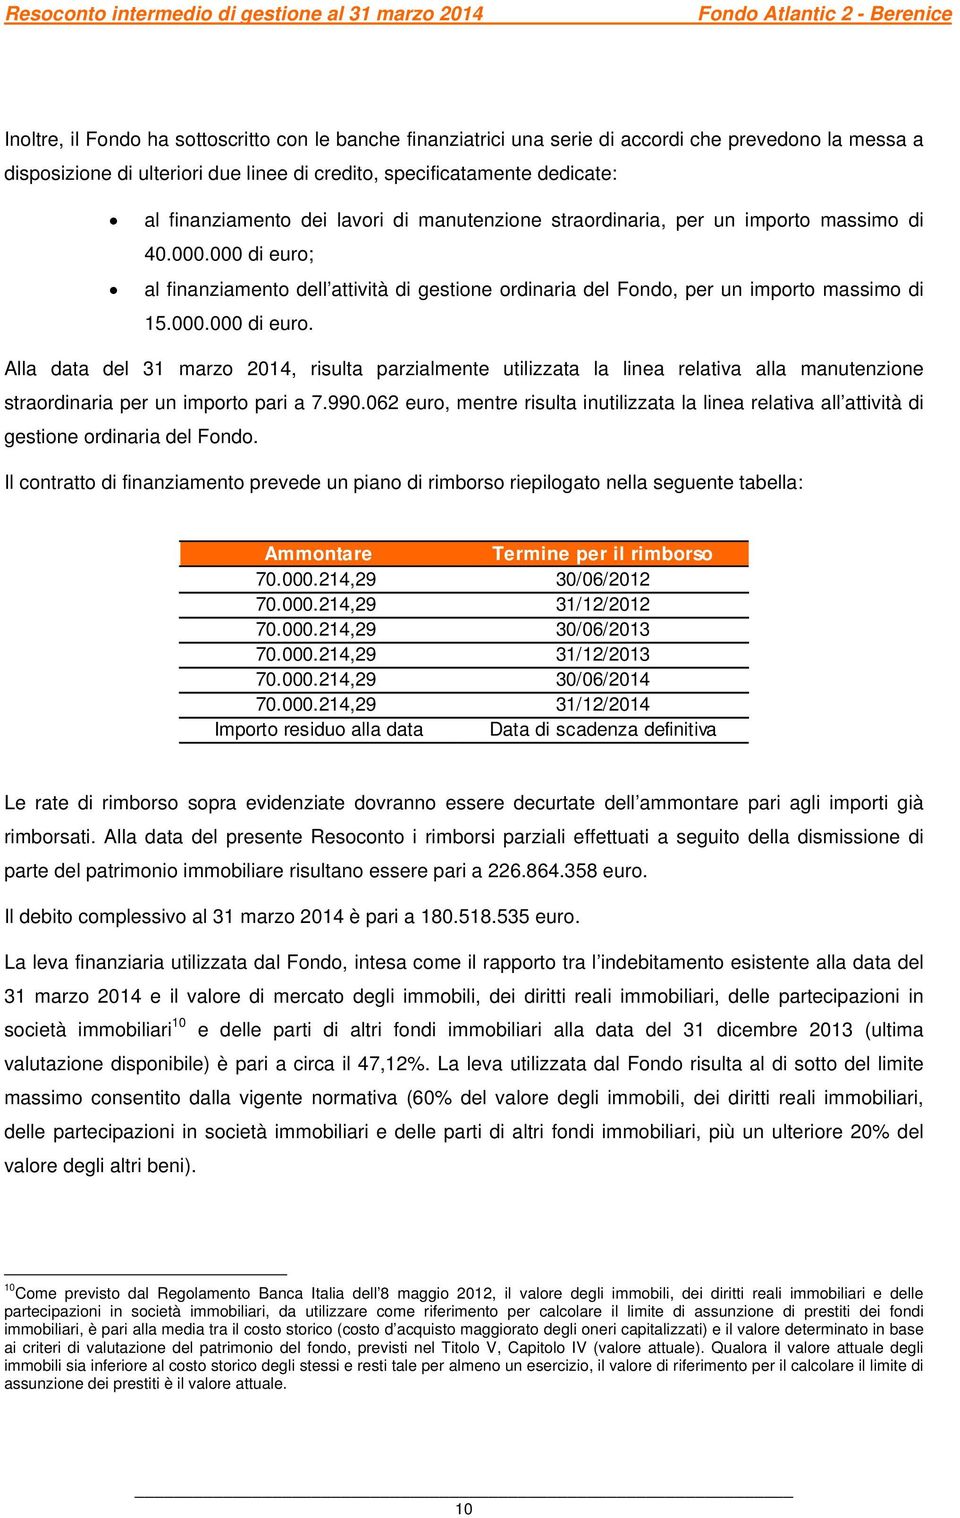 al finanziamento dell attività di gestione ordinaria del Fondo, per un importo massimo di 15.000.000 di euro.